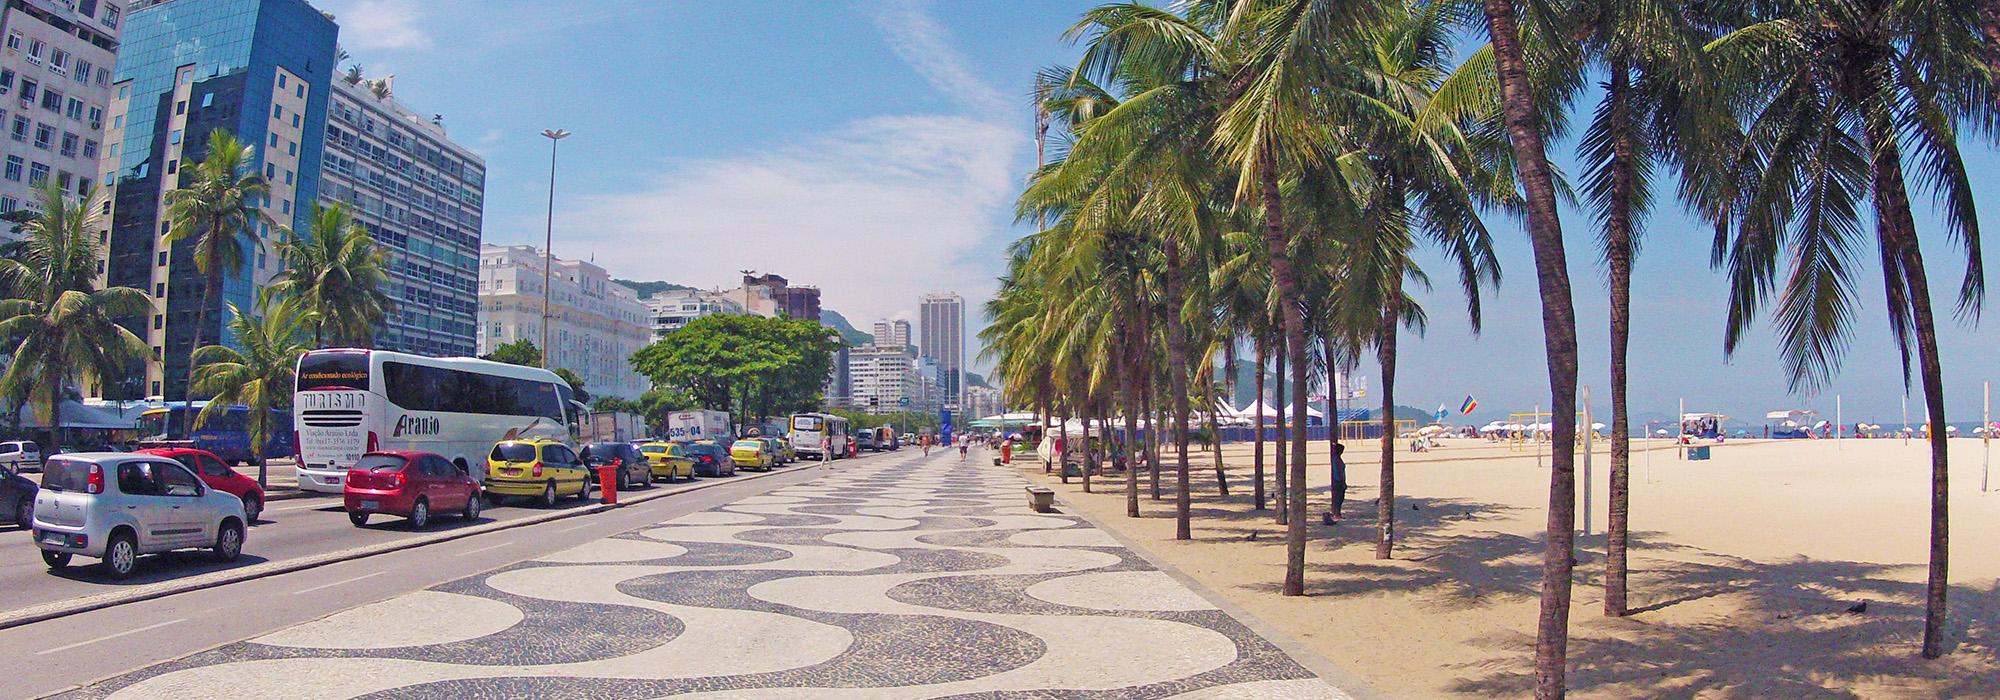 Calçadão de Copacabana, Rio de Janeiro, Brazil